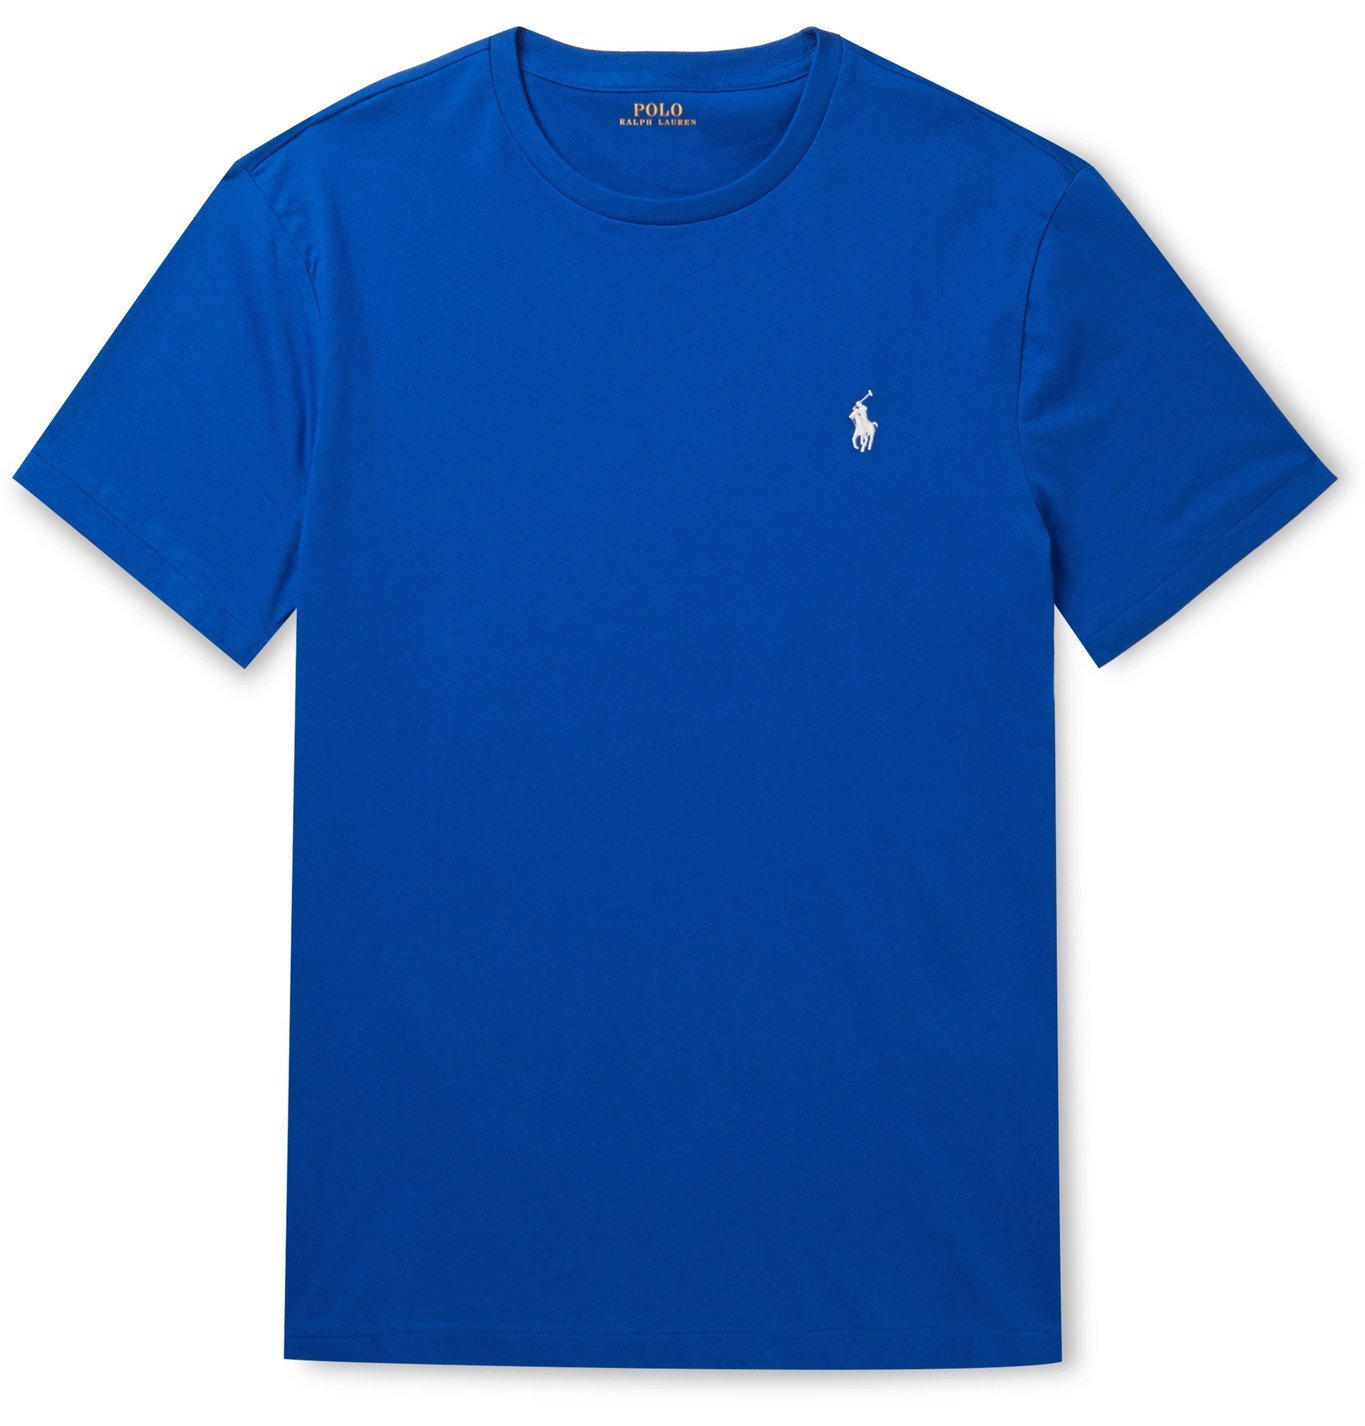 Polo Ralph Lauren - Slim-Fit Cotton-Jersey T-Shirt - Blue Polo Ralph Lauren